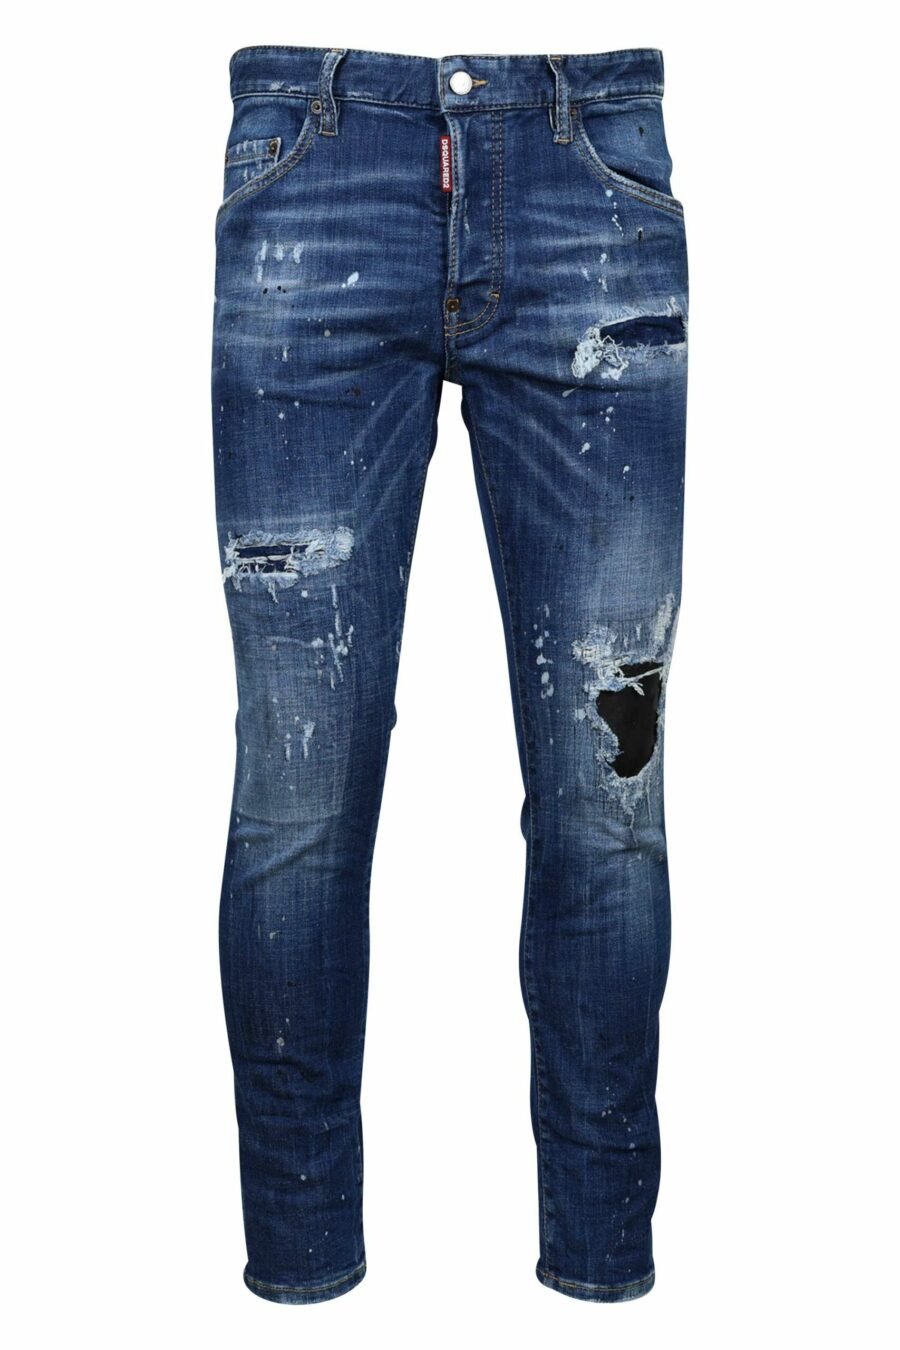 Pantalón vaquero "skater jean" azul con rotos y desgastado - 8054148124687 1 scaled